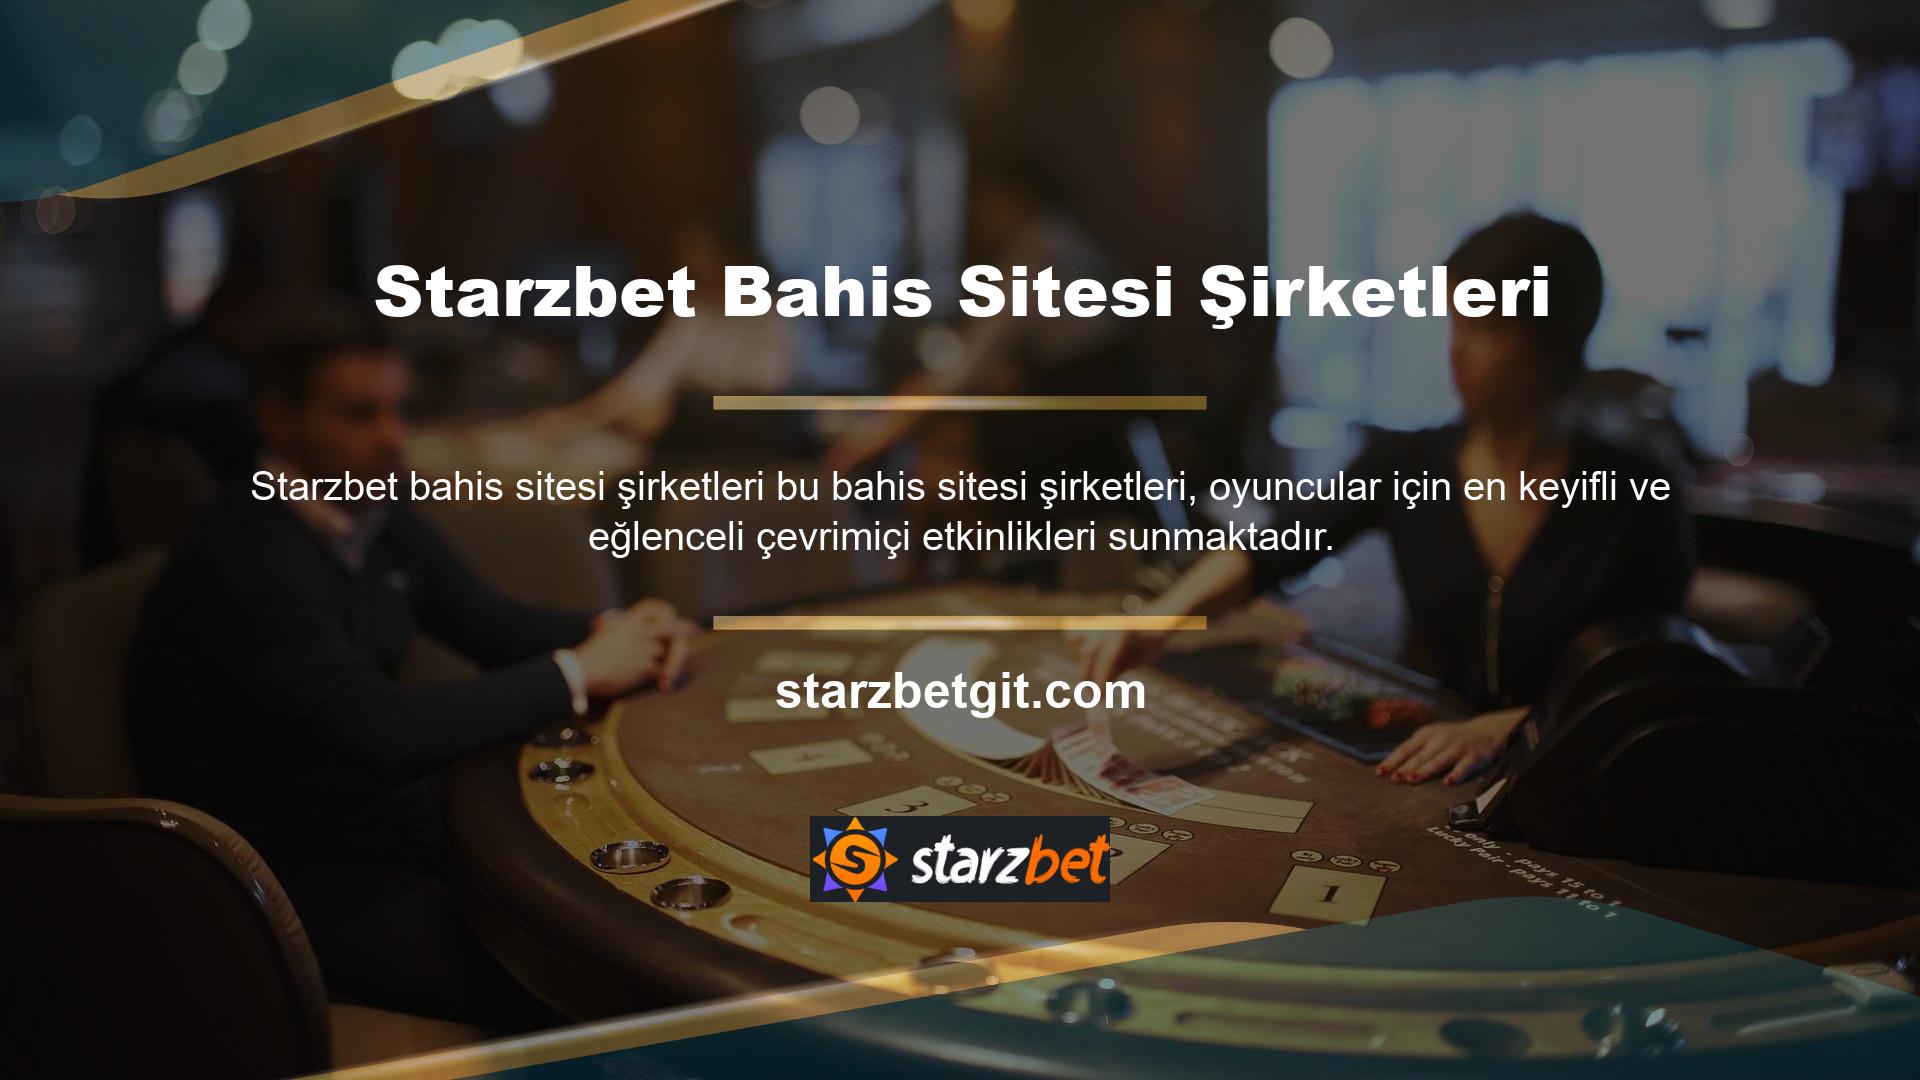 Her şeye rağmen zorlu bir bahis sitesi olan Starzbet, hâlâ ödeme yöntemleri talep ediyor